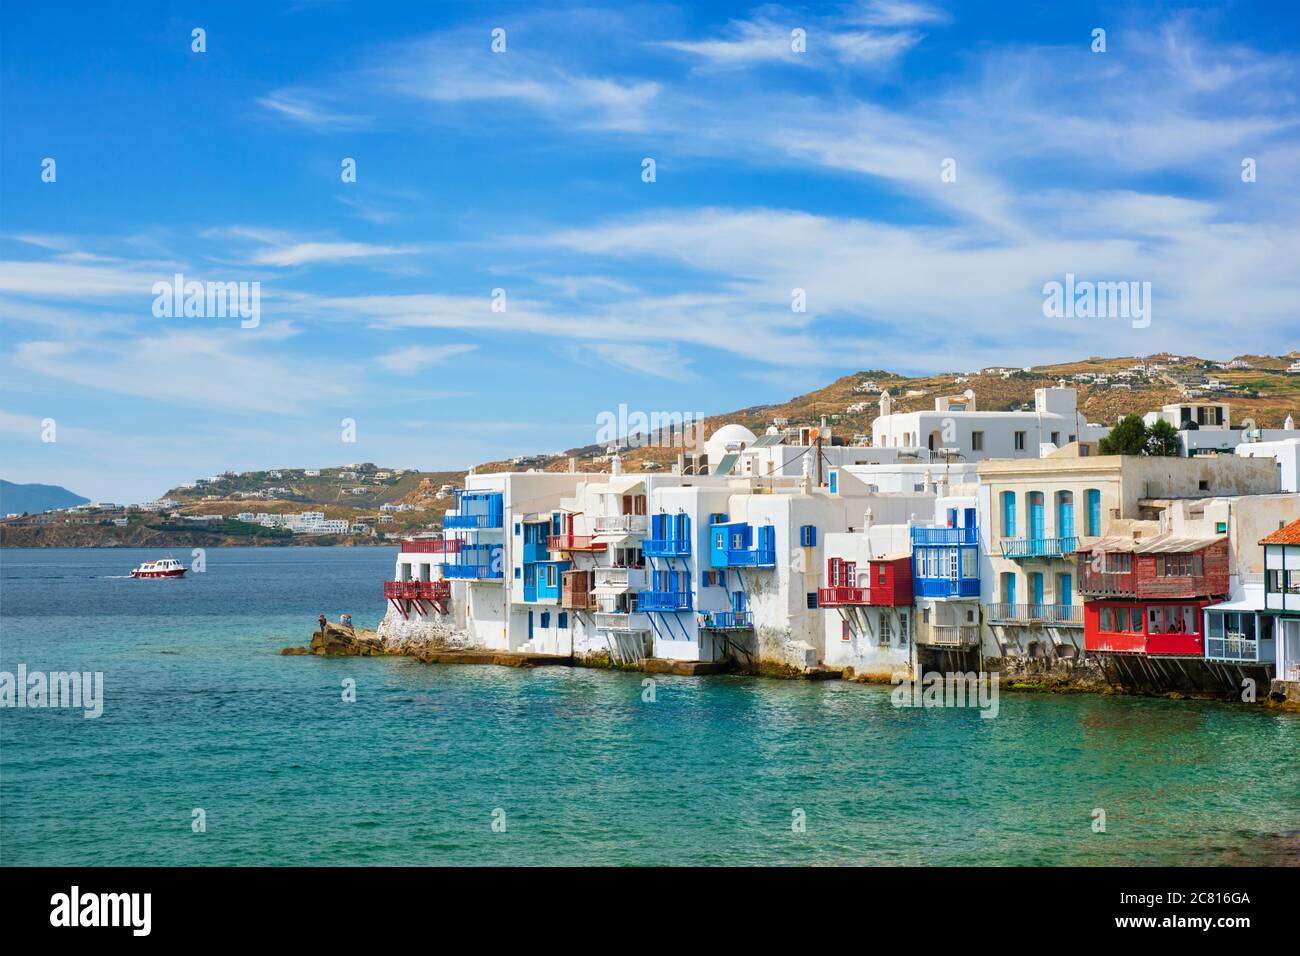 Piccole case a Venezia nella città di Chora Mykonos con yacht e nave da crociera. Isola di Mykonos, Greecer Foto Stock